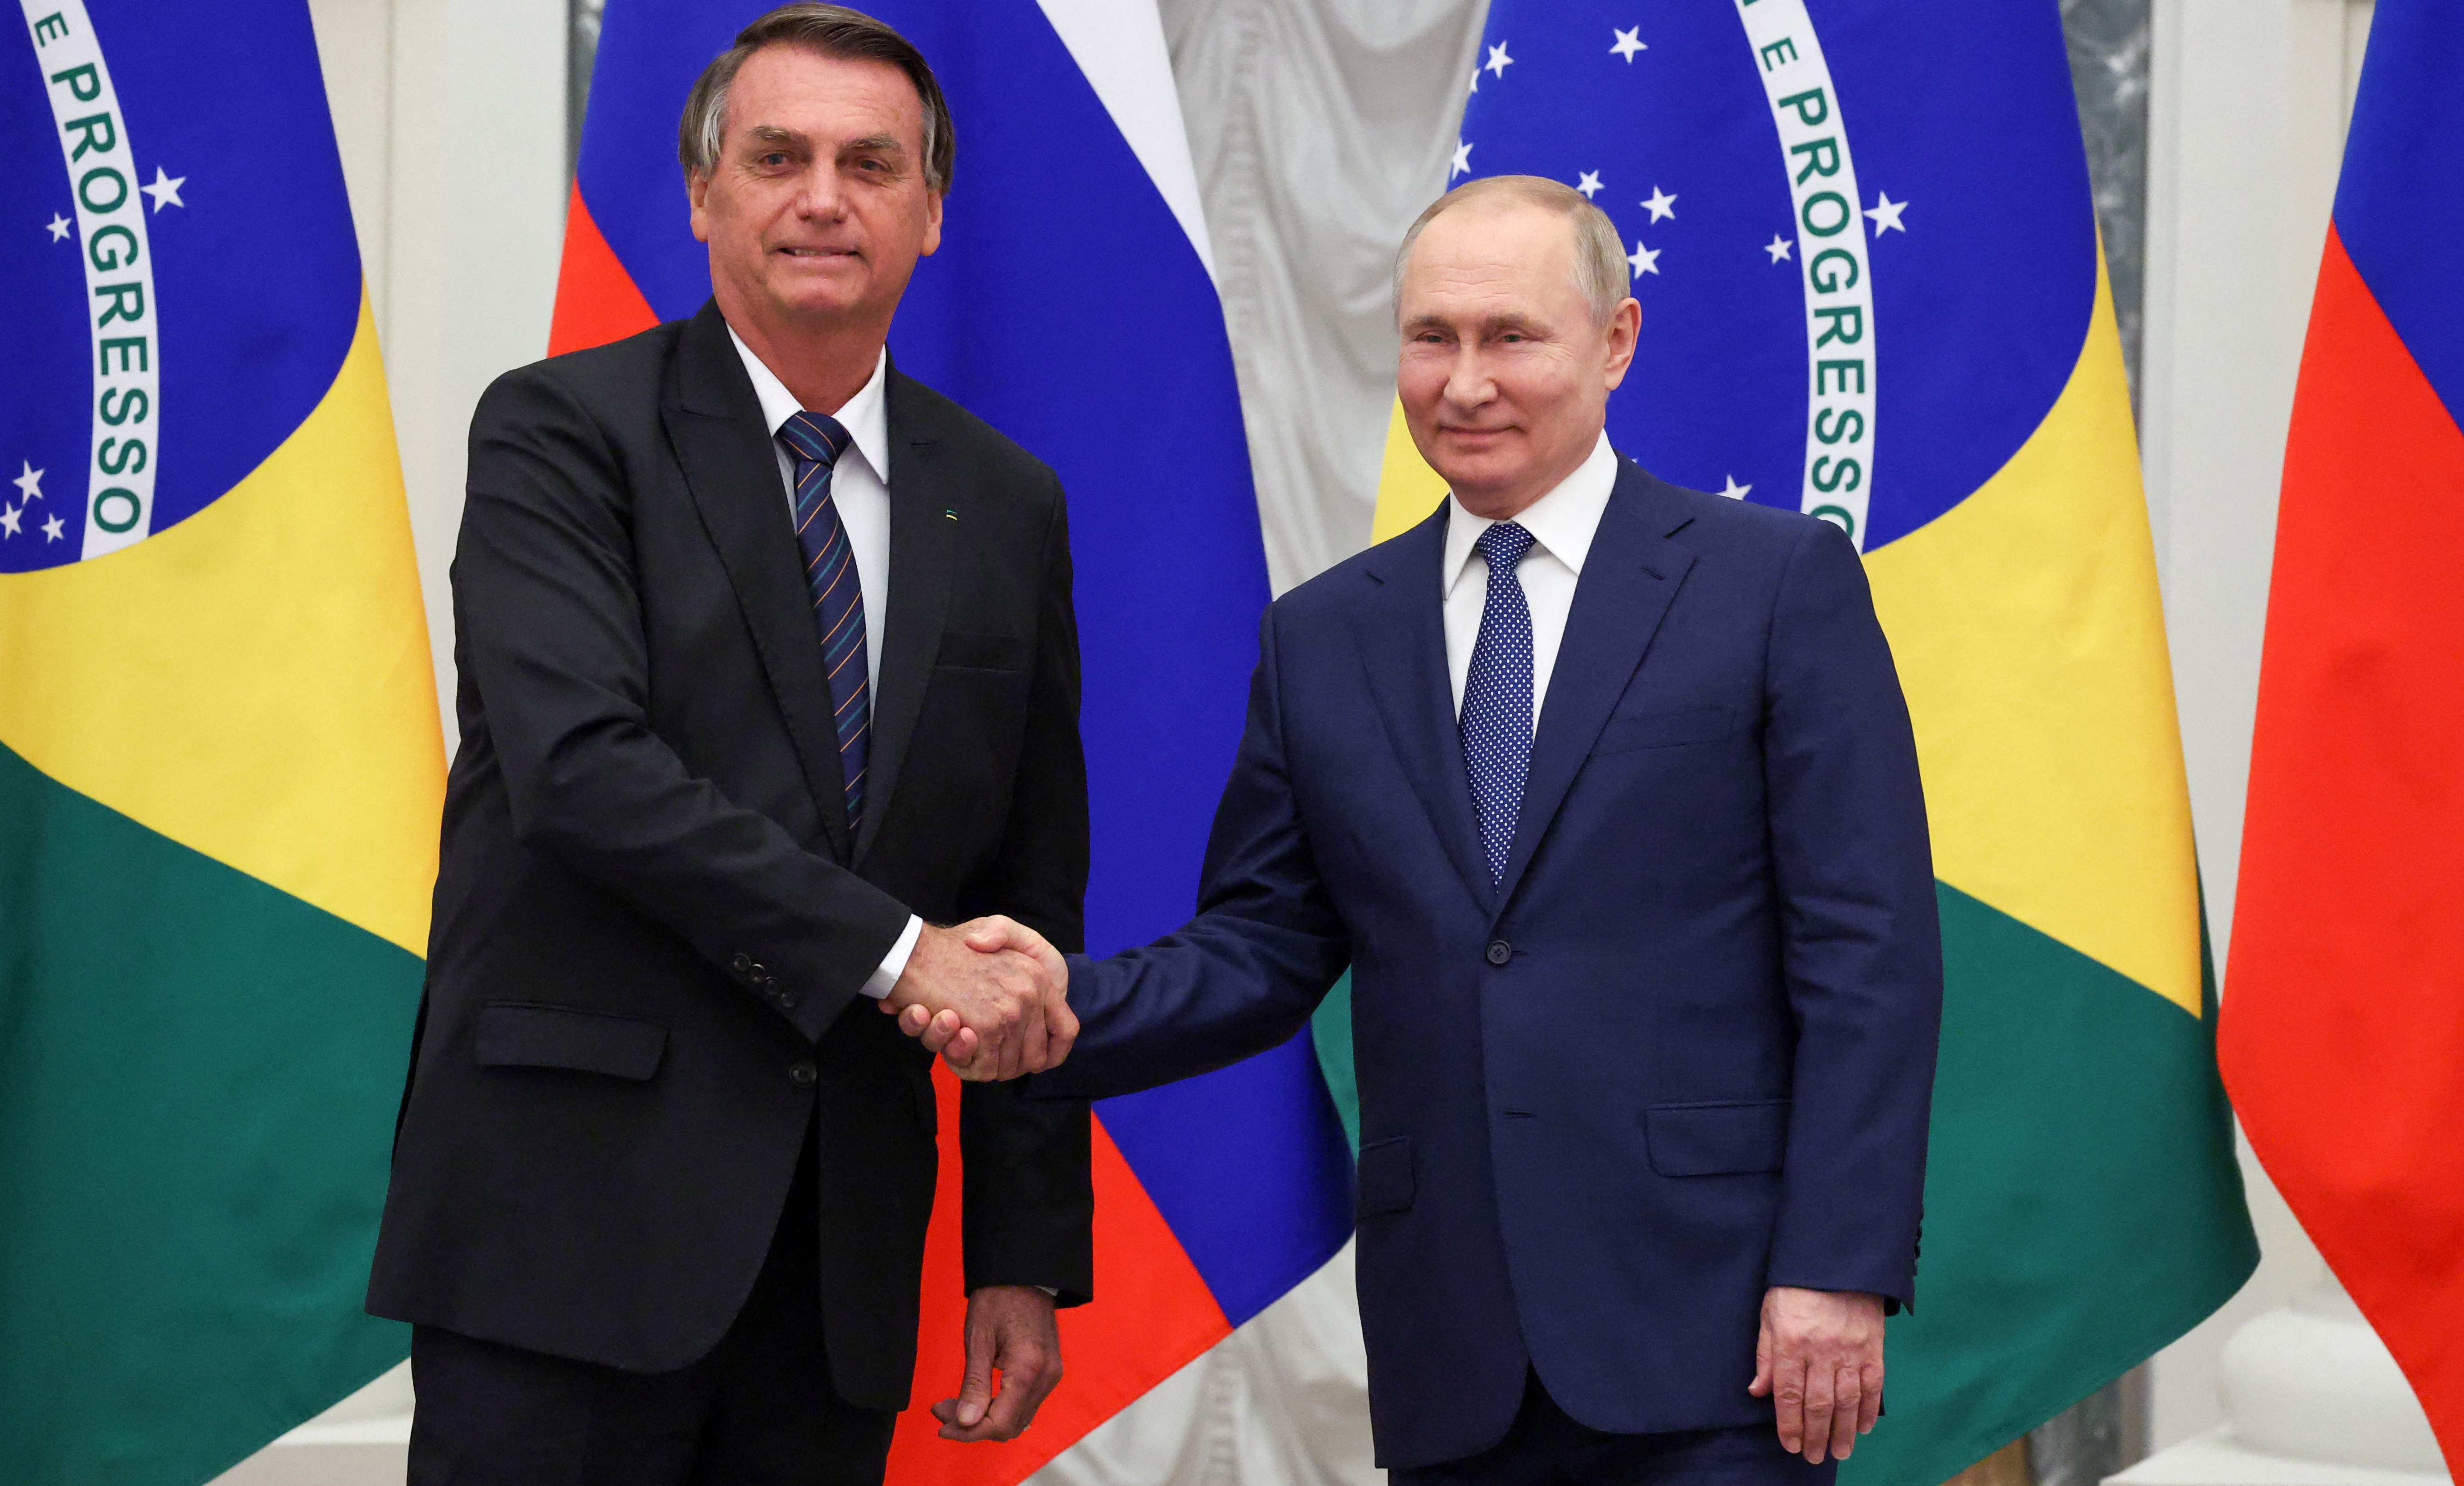 El presidente ruso Vladimir Putin (R) estrecha la mano del presidente de Brasil Jair Bolsonaro durante una conferencia de prensa conjunta tras sus conversaciones en el Kremlin, en Moscú, el 16 de febrero de 2022. (Foto Prensa Libre: AFP)